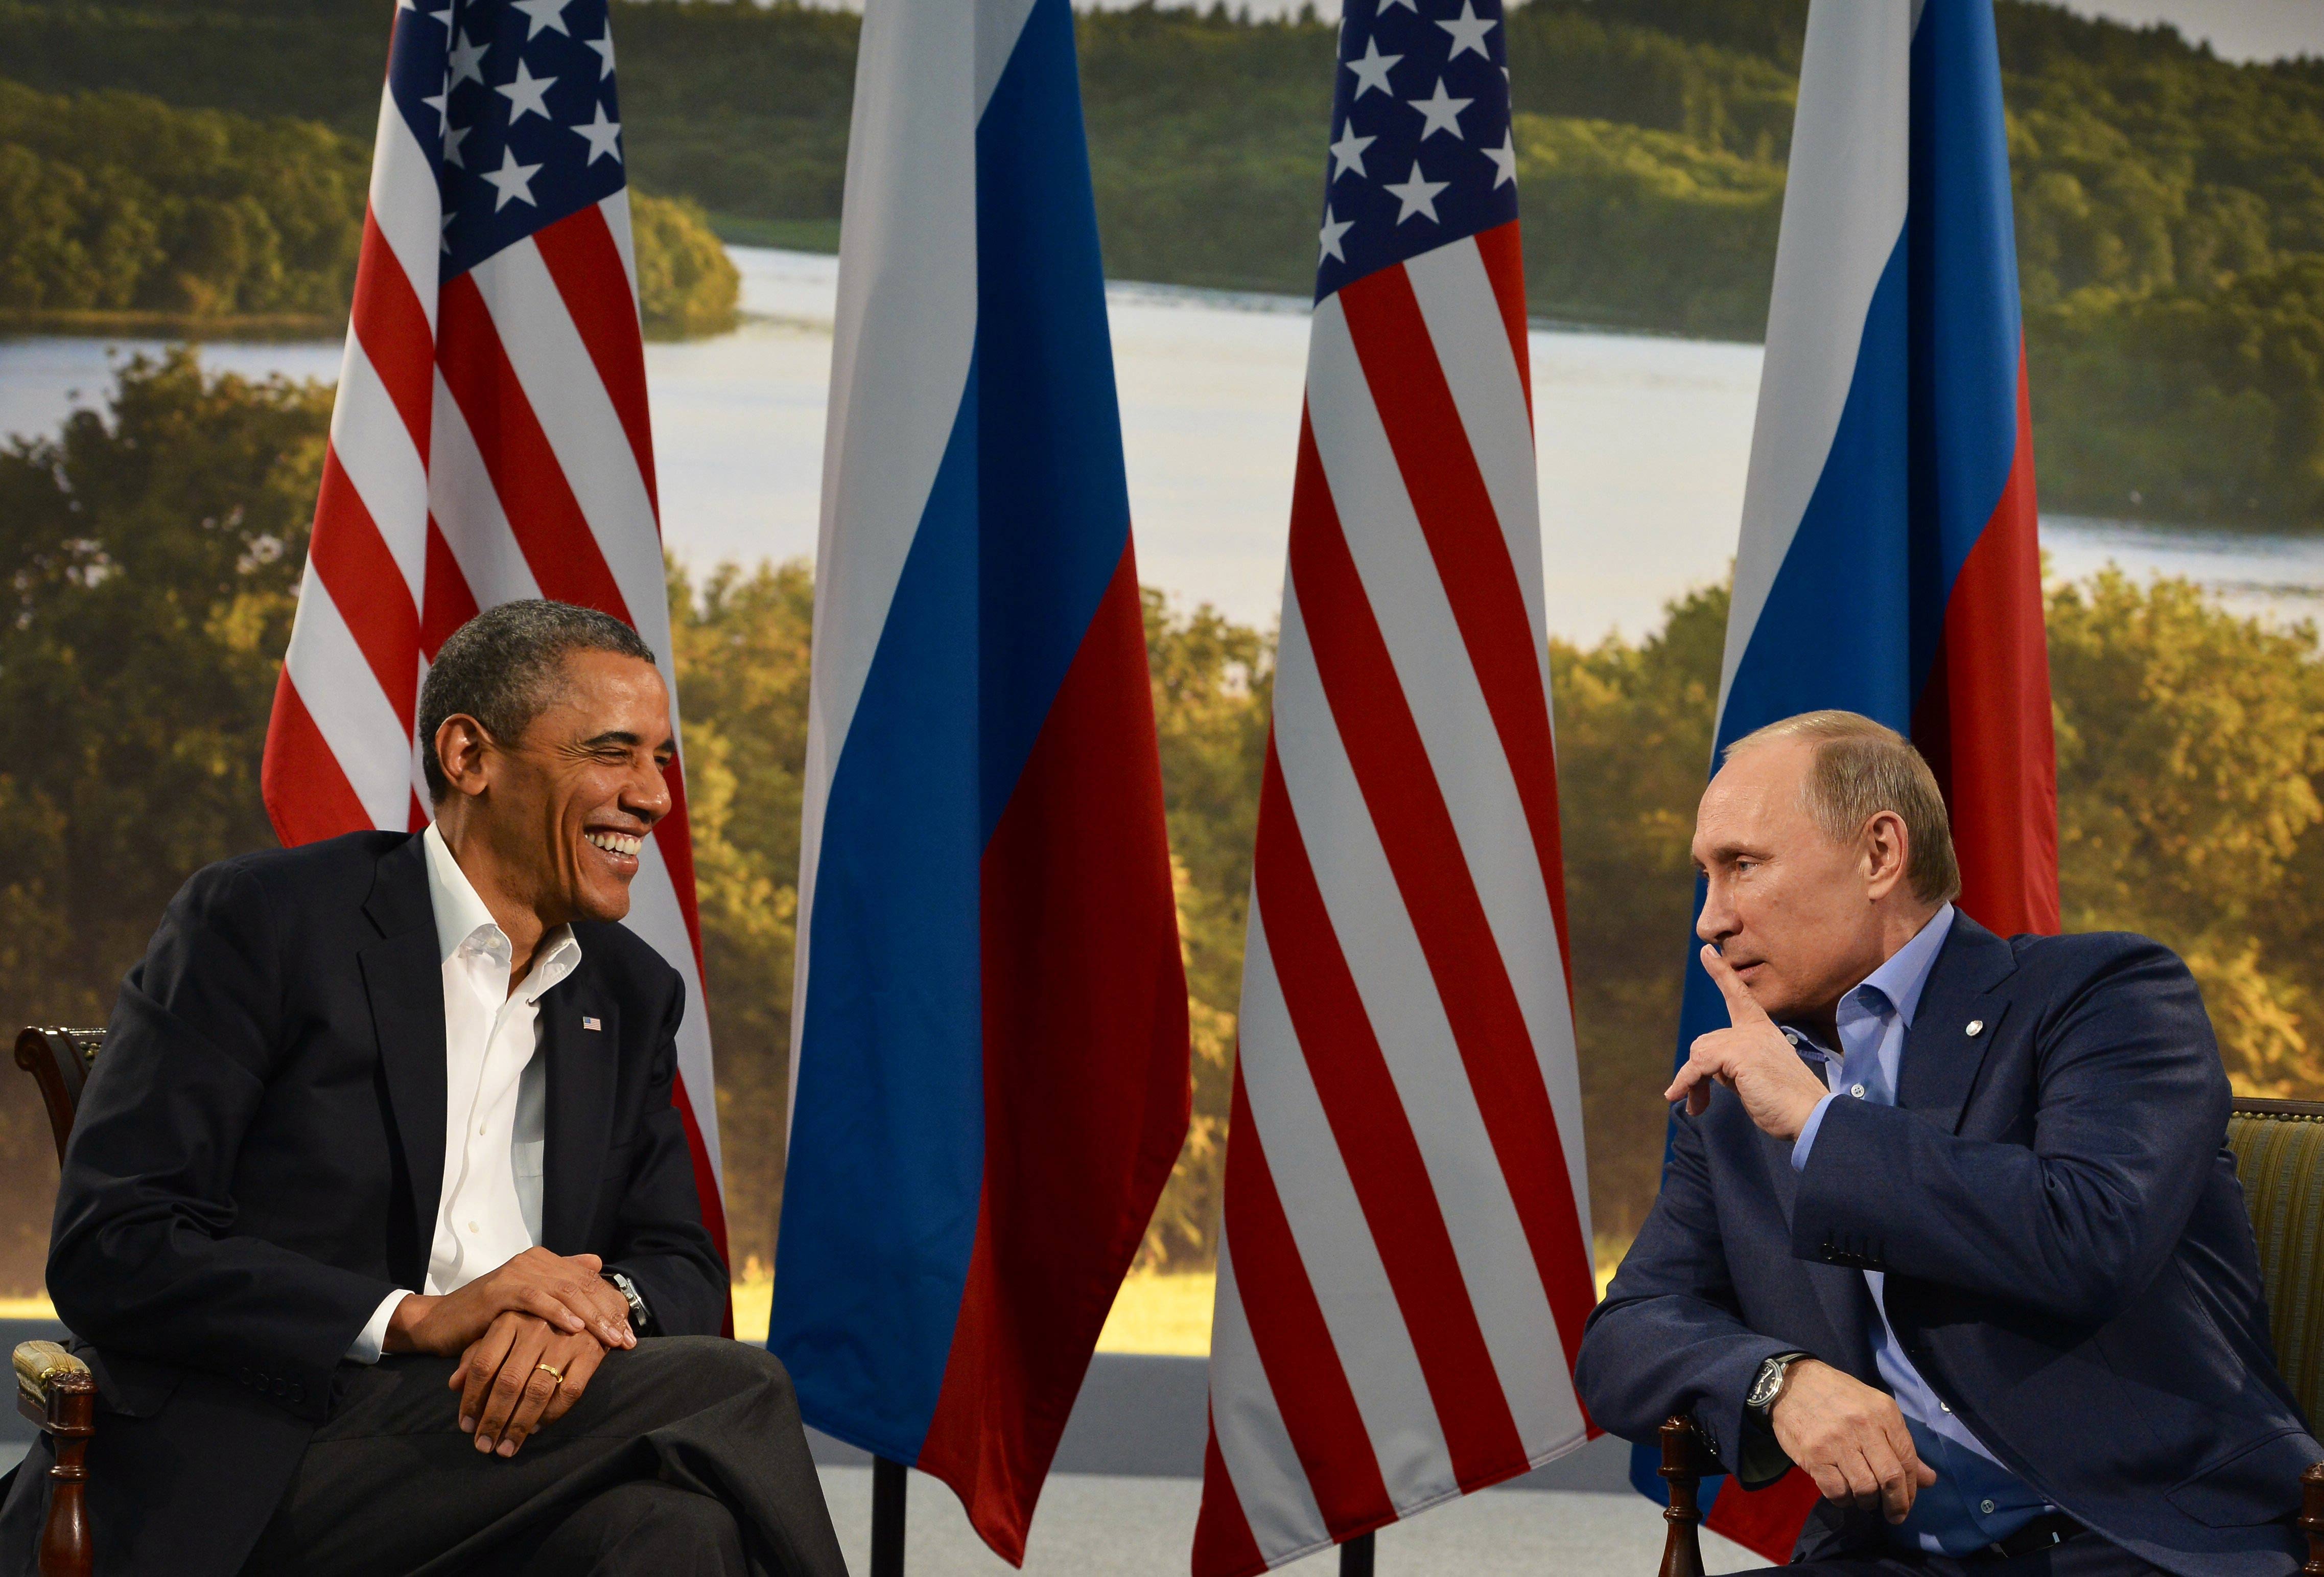 Обама очаква подкрепа за война от Конгреса, Путин го обвинява в целенасочени лъжи